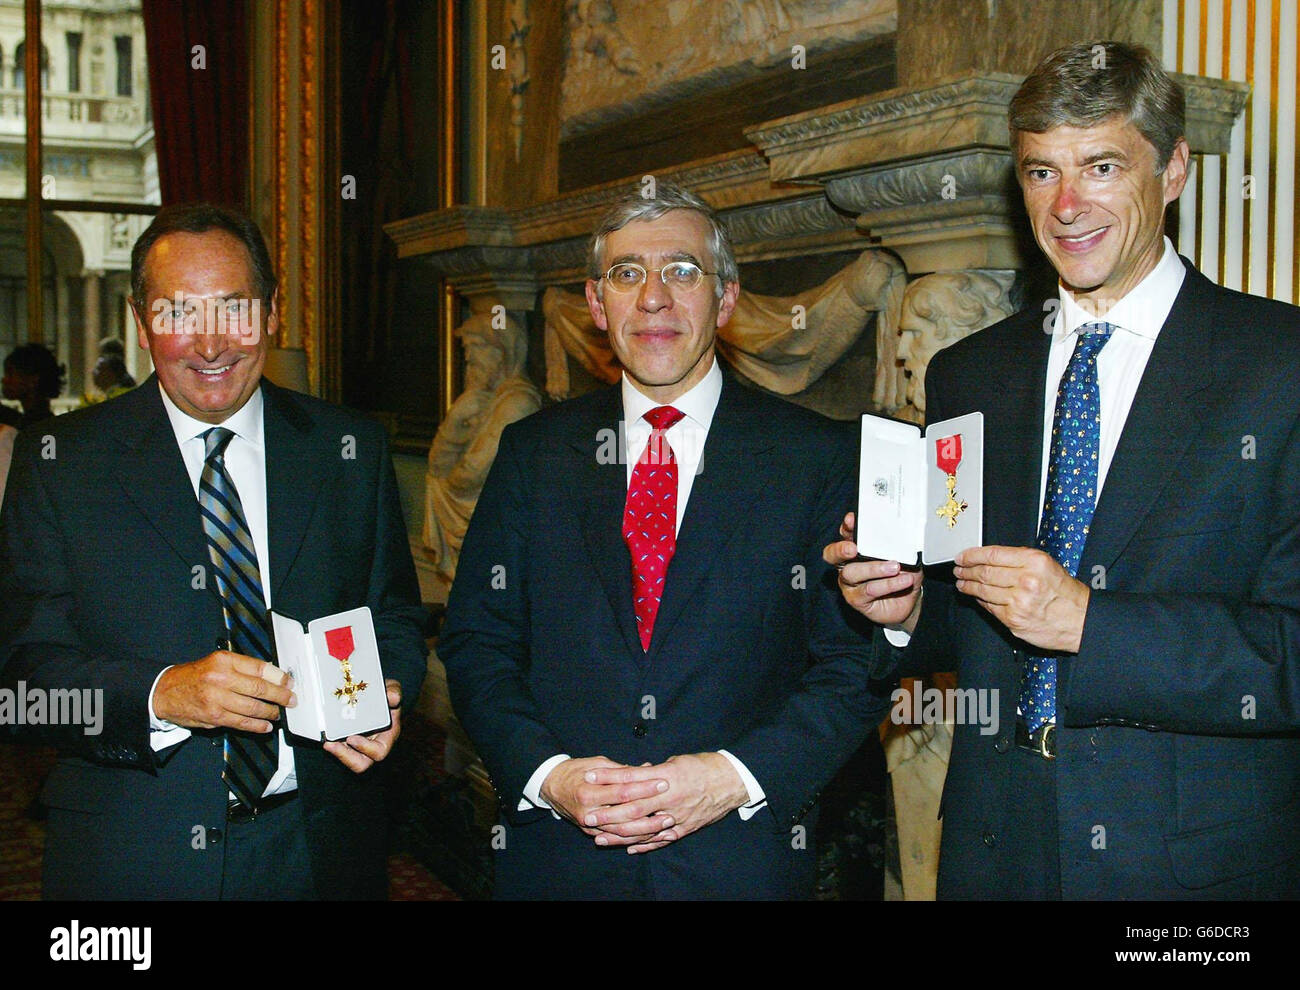 Les entraîneurs de football de premier rang, Gerard Houllier de Liverpool (à gauche) et Arsene Wenger d'Arsenal, avec leurs OBE honoraires présentés par le Secrétaire aux Affaires étrangères Jack Straw (au centre) au Bureau des Affaires étrangères et du Commonwealth à Londres. Banque D'Images